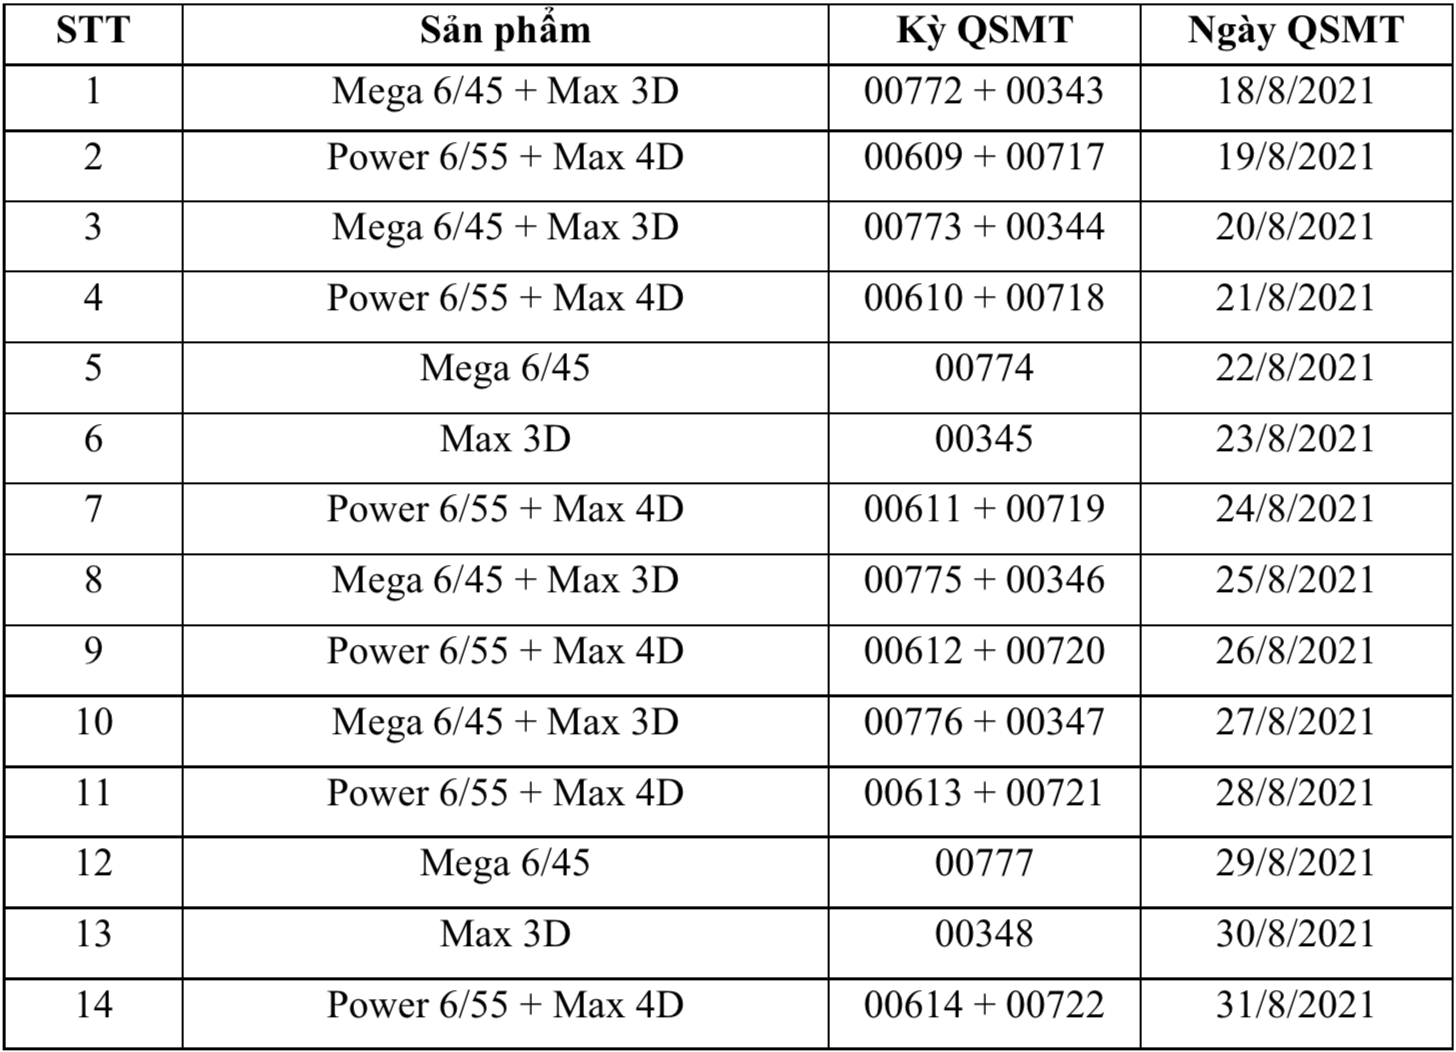 Vietlott chính thức mở thưởng trở lại xổ số Mega 6/45, Power 6/55, Max 3D và Max 4D từ ngày 18/8